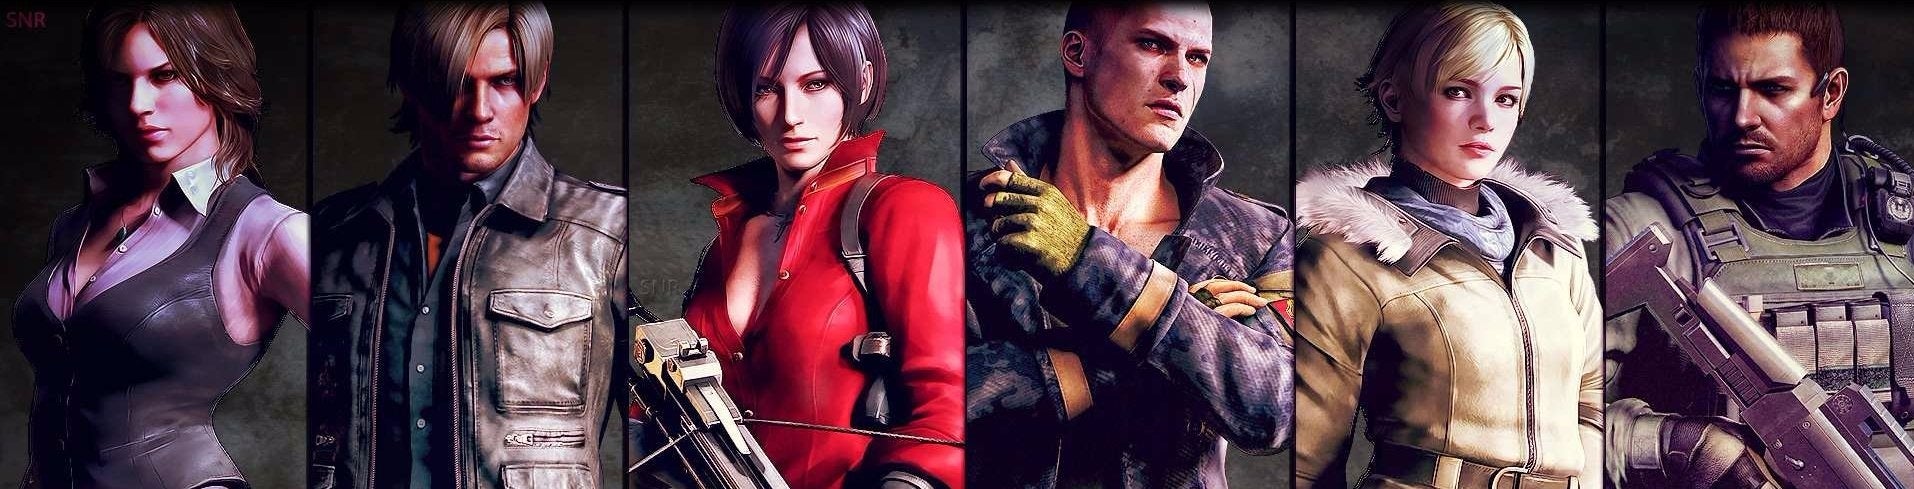 Obrazki dla Digital Foundry kontra Resident Evil 6 Remastered